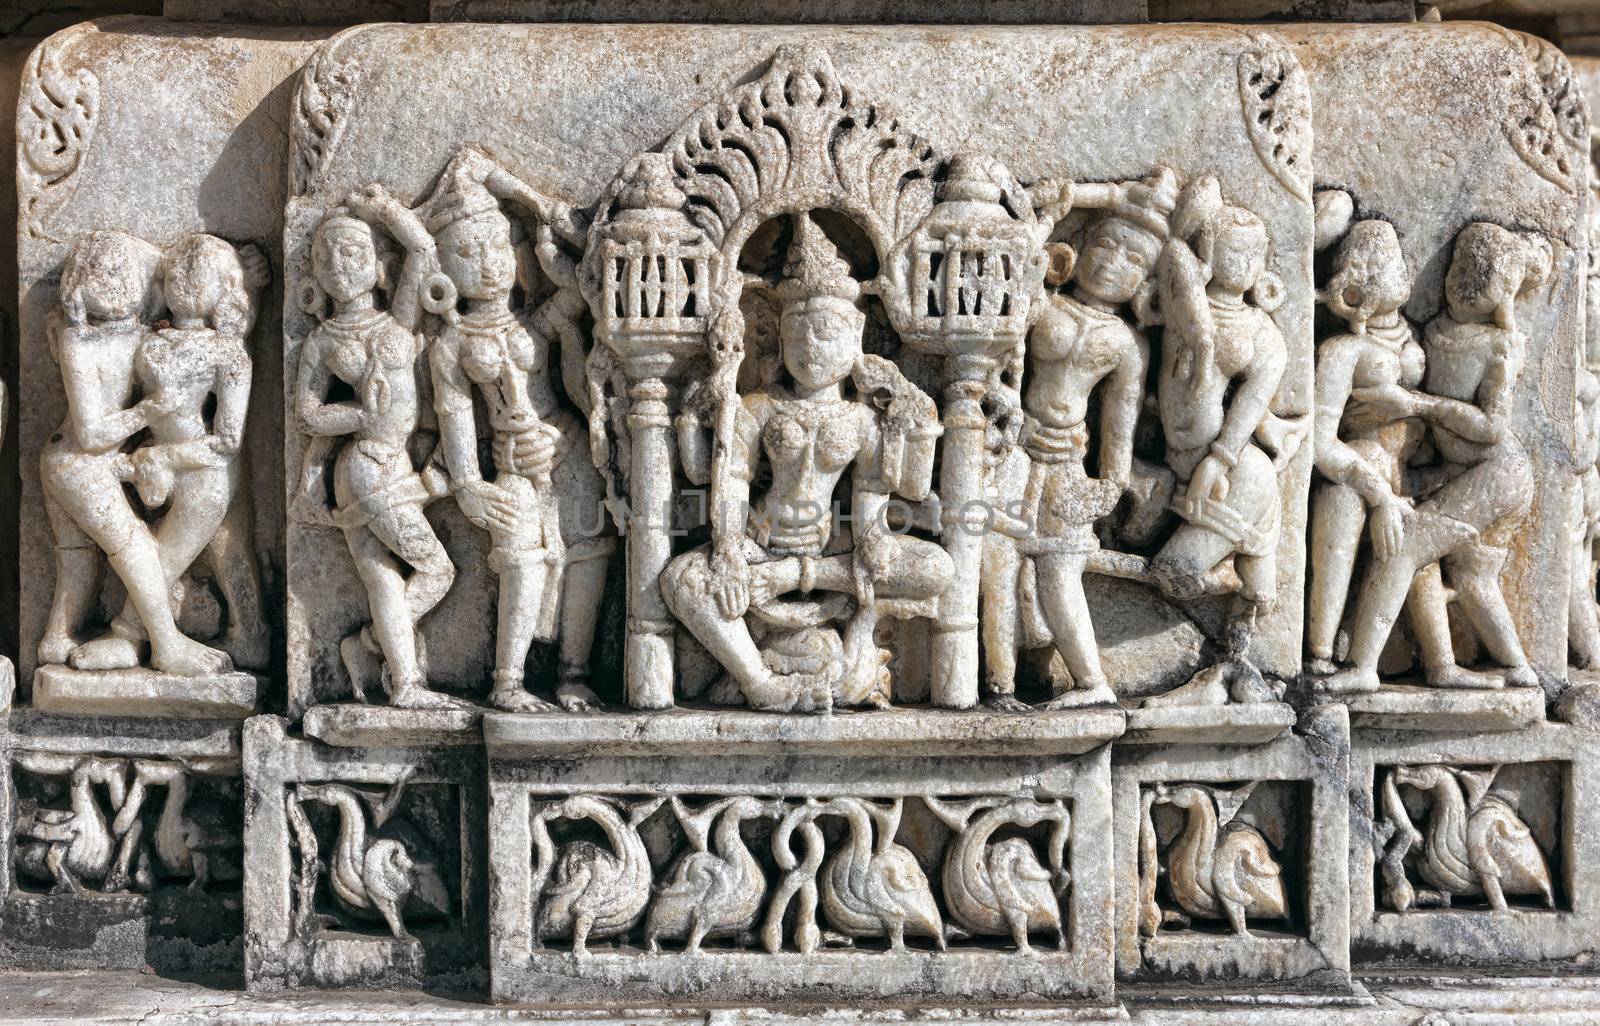  Ancient Sun Temple in Ranakpur. Jain Temple Carving. by vladimir_sklyarov